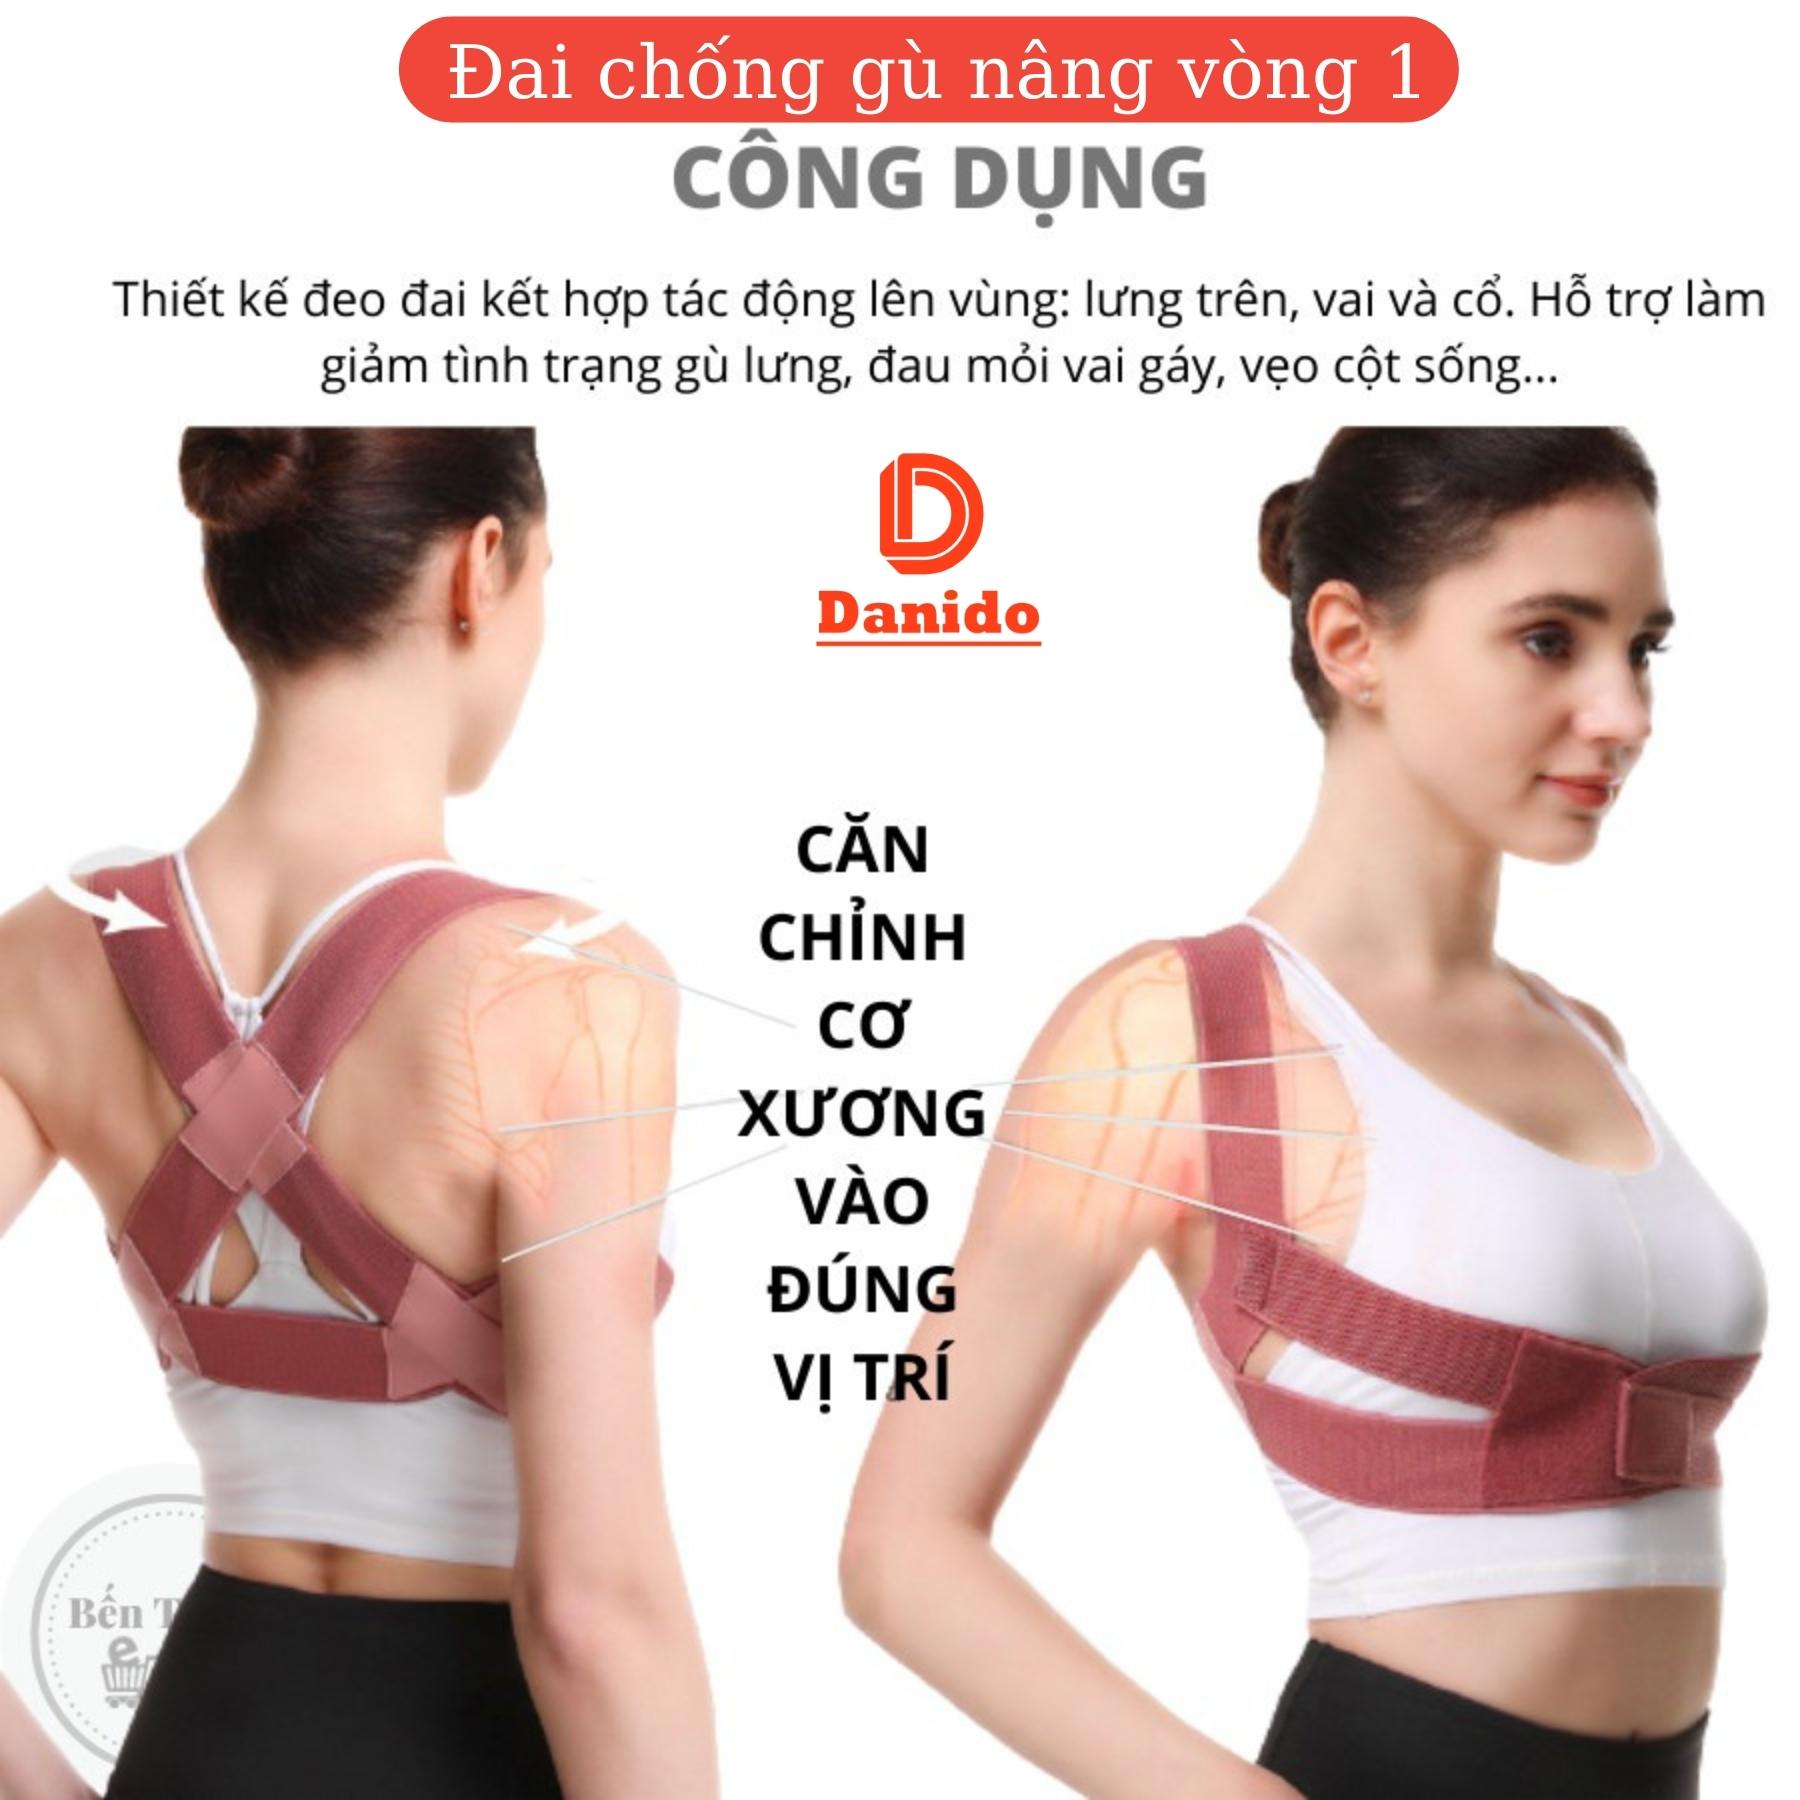 Đai chống gù lưng cải tiến 4.0 mới giúp định hình lưng thẳng khi tập thể dục thể thao - Hàng chính hãng D Danido